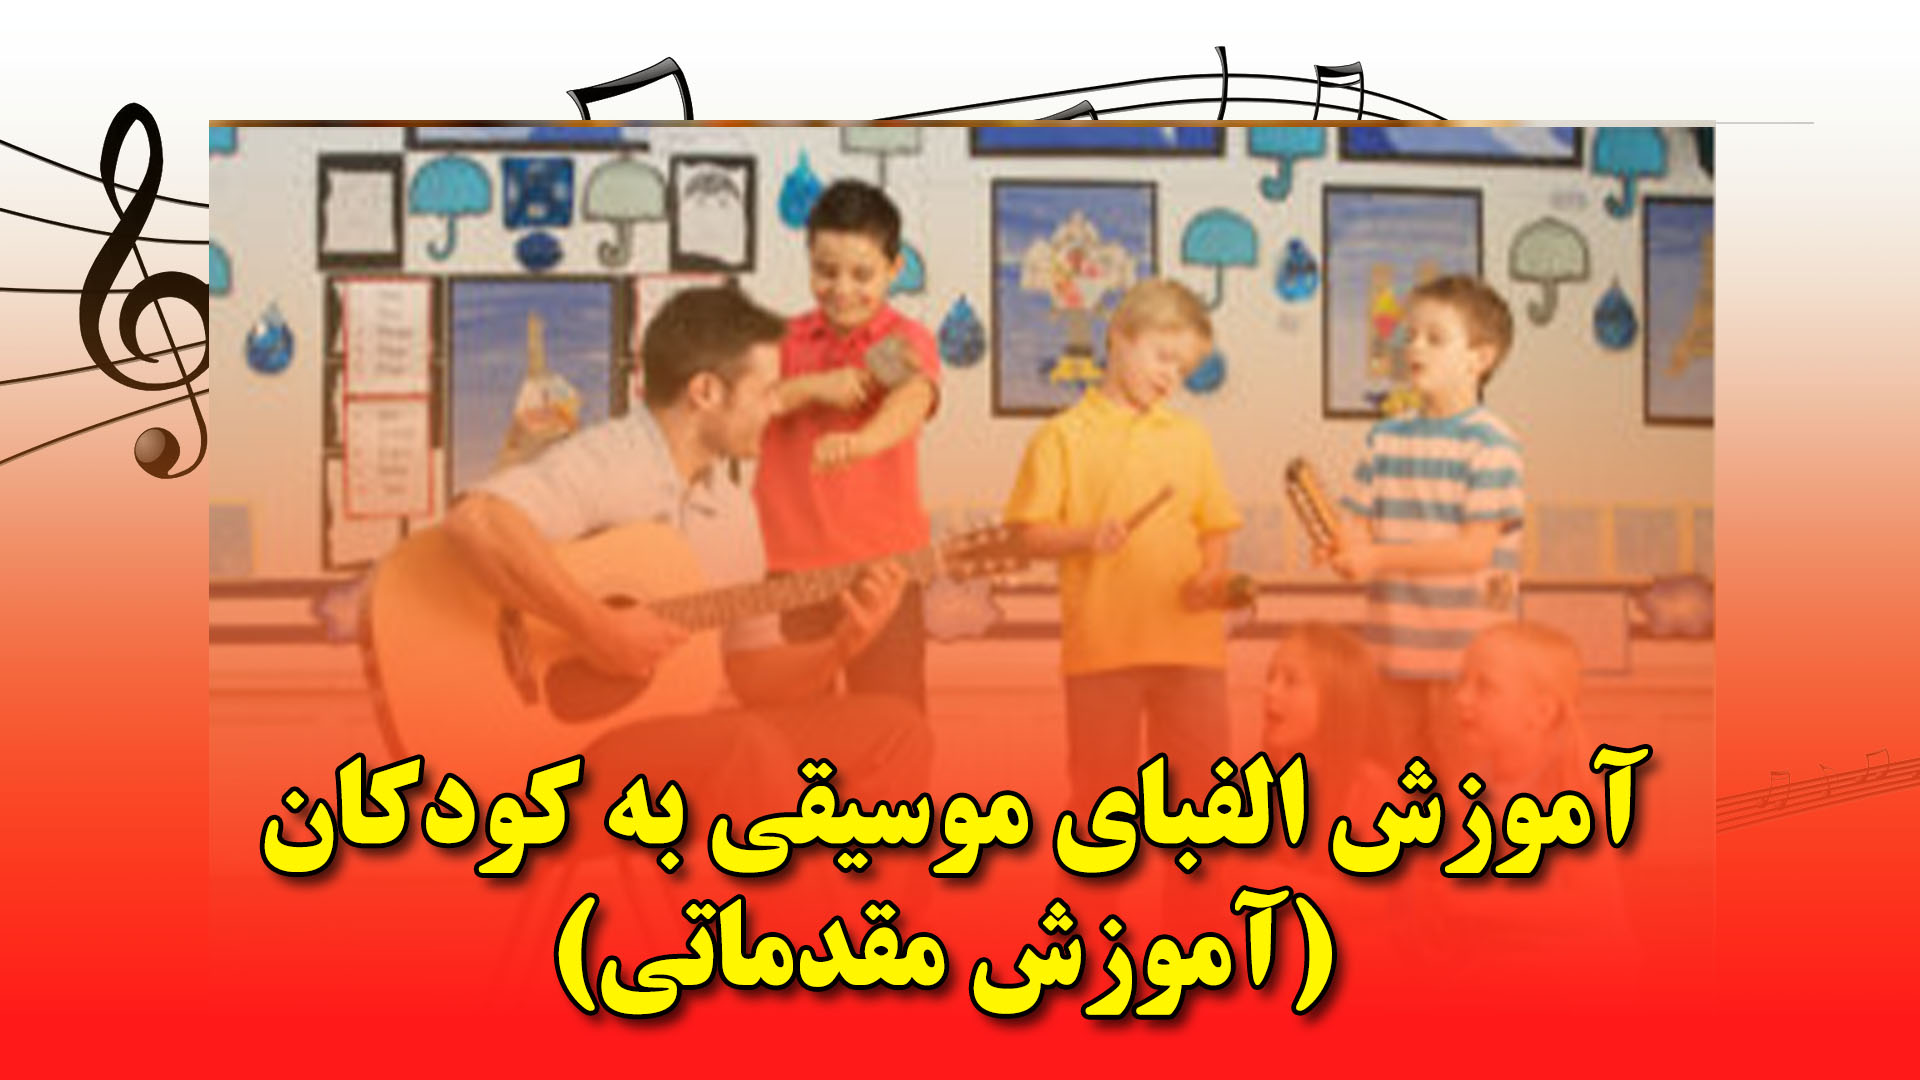 آموزش الفبای موسیقی به کودکان (آموزش مقدماتی)